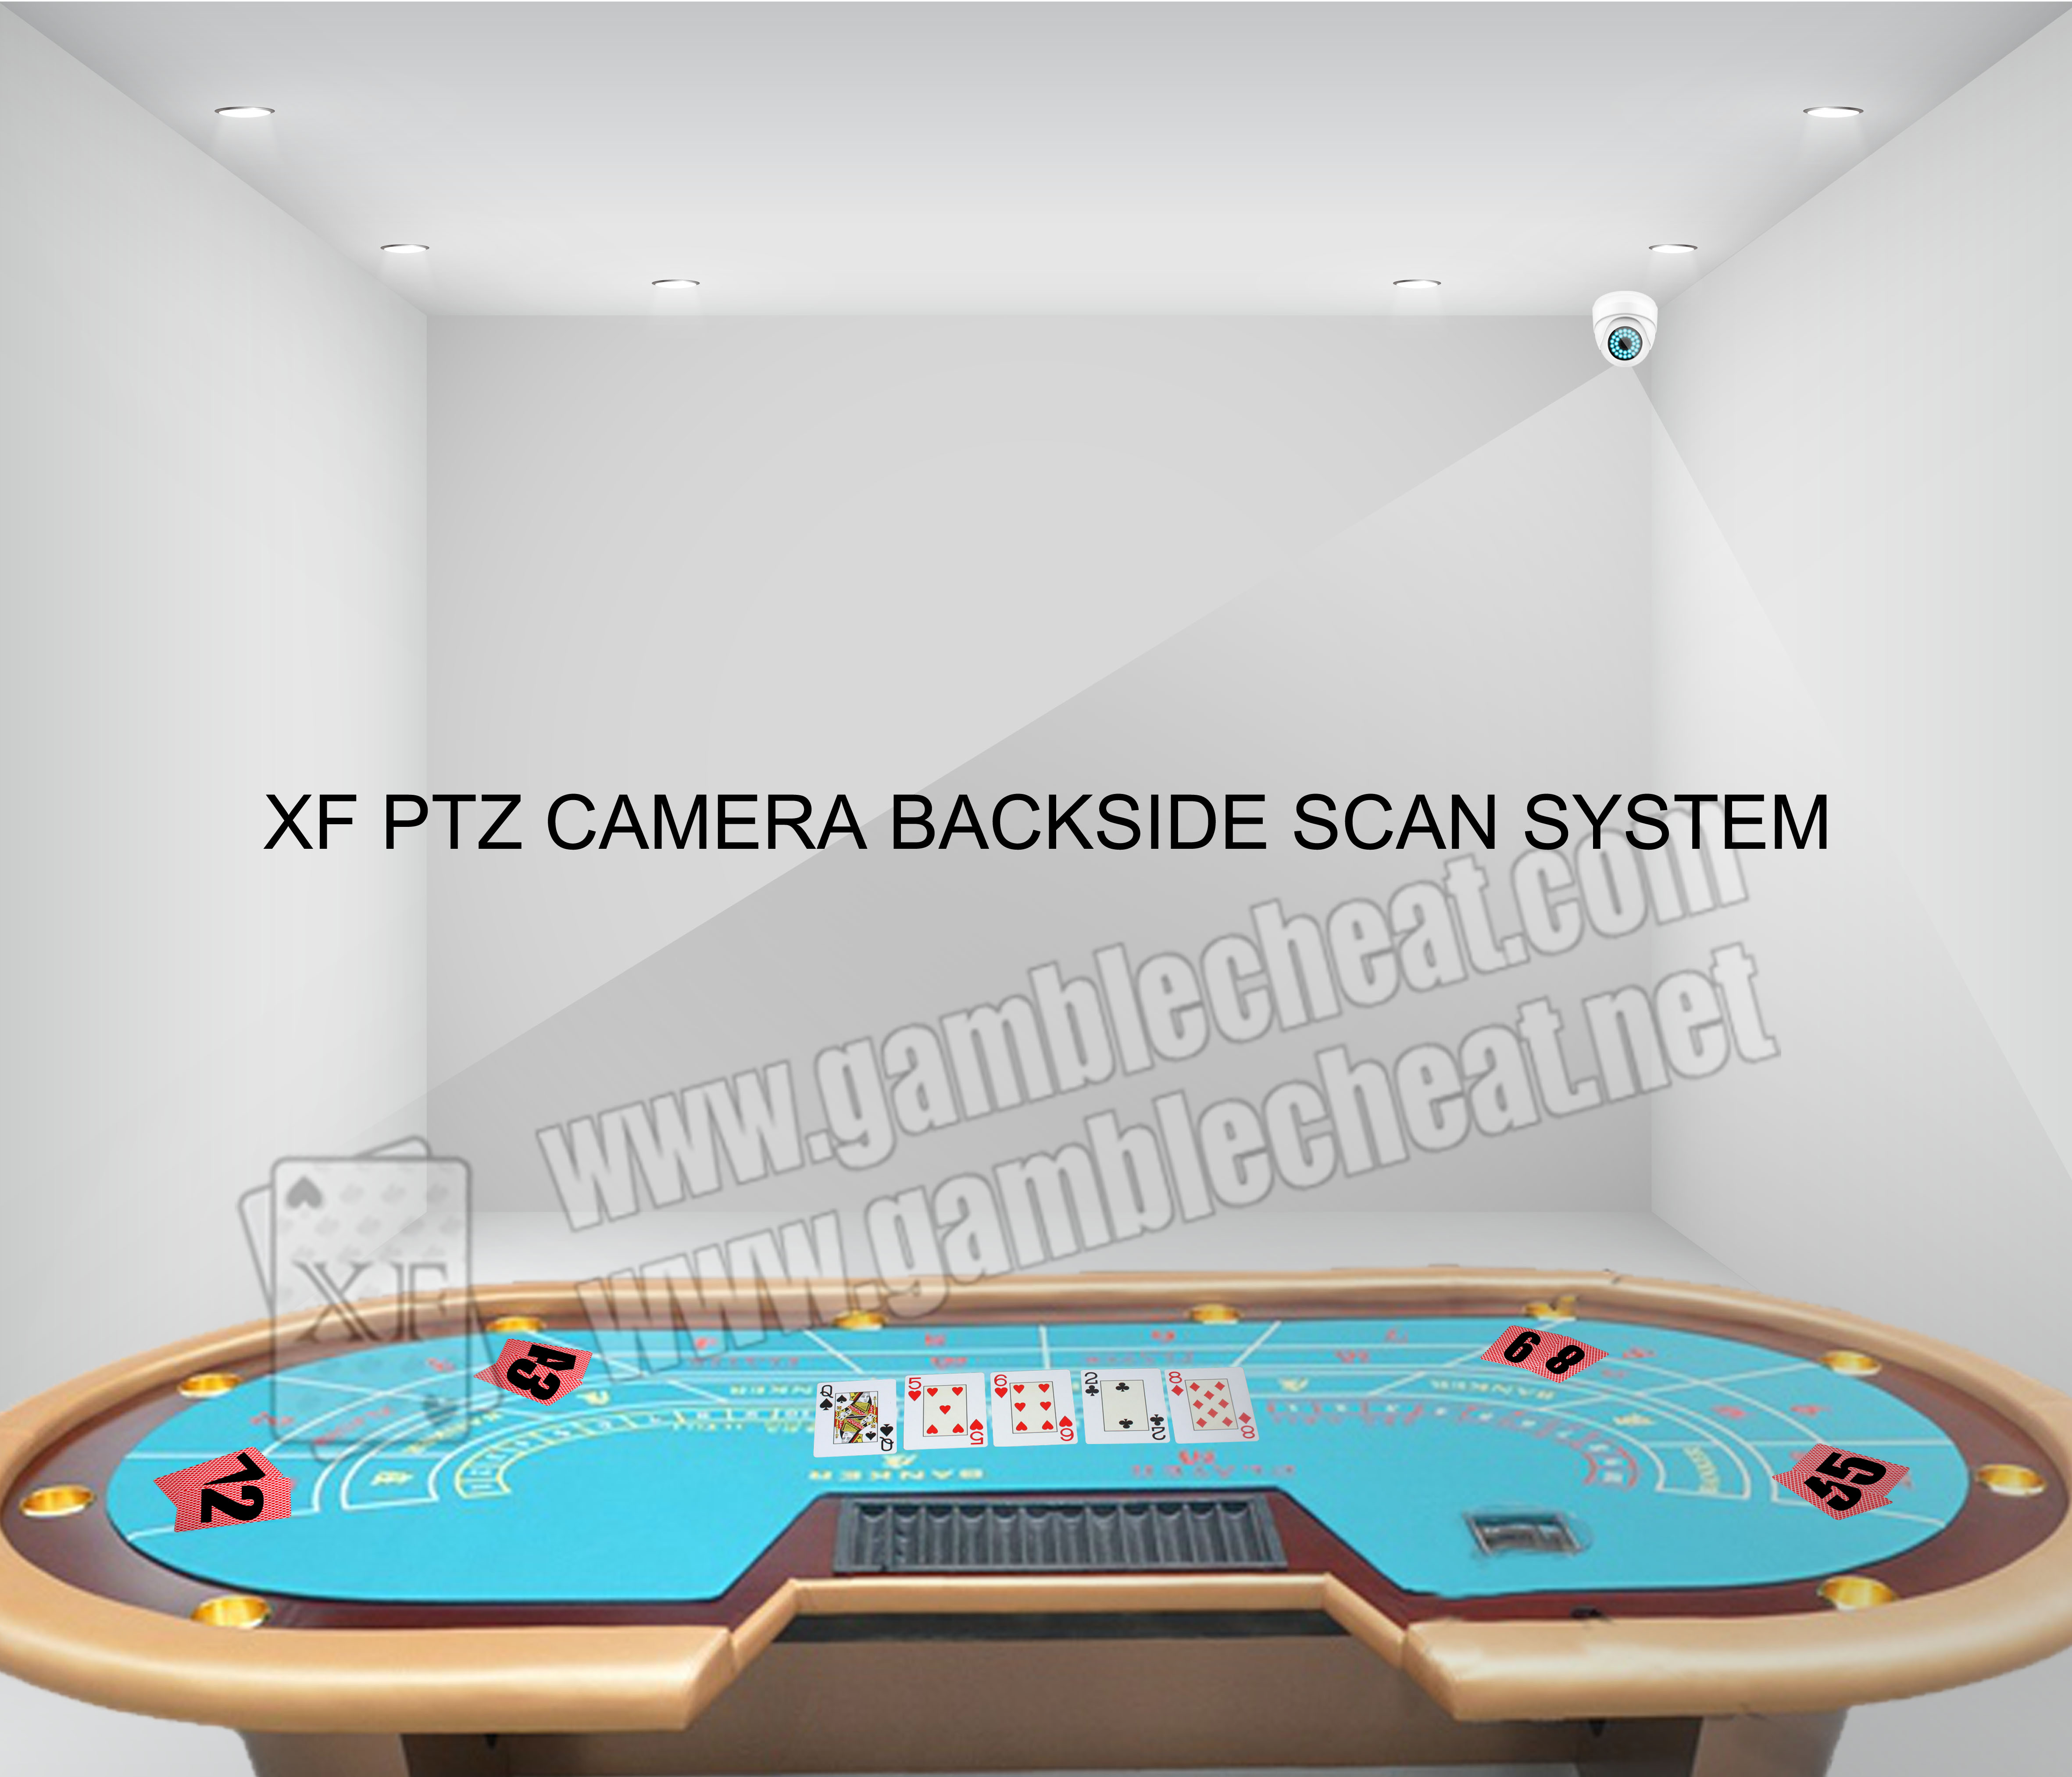 XF Бренд новый PTZ задней маркировки камеру на обратной стороне карты маркировки игральных карт/ Кыргызстан отмеченные карты/покер сканер/карты чит/контактные линзы/невидимые чернила/отмеченные играль